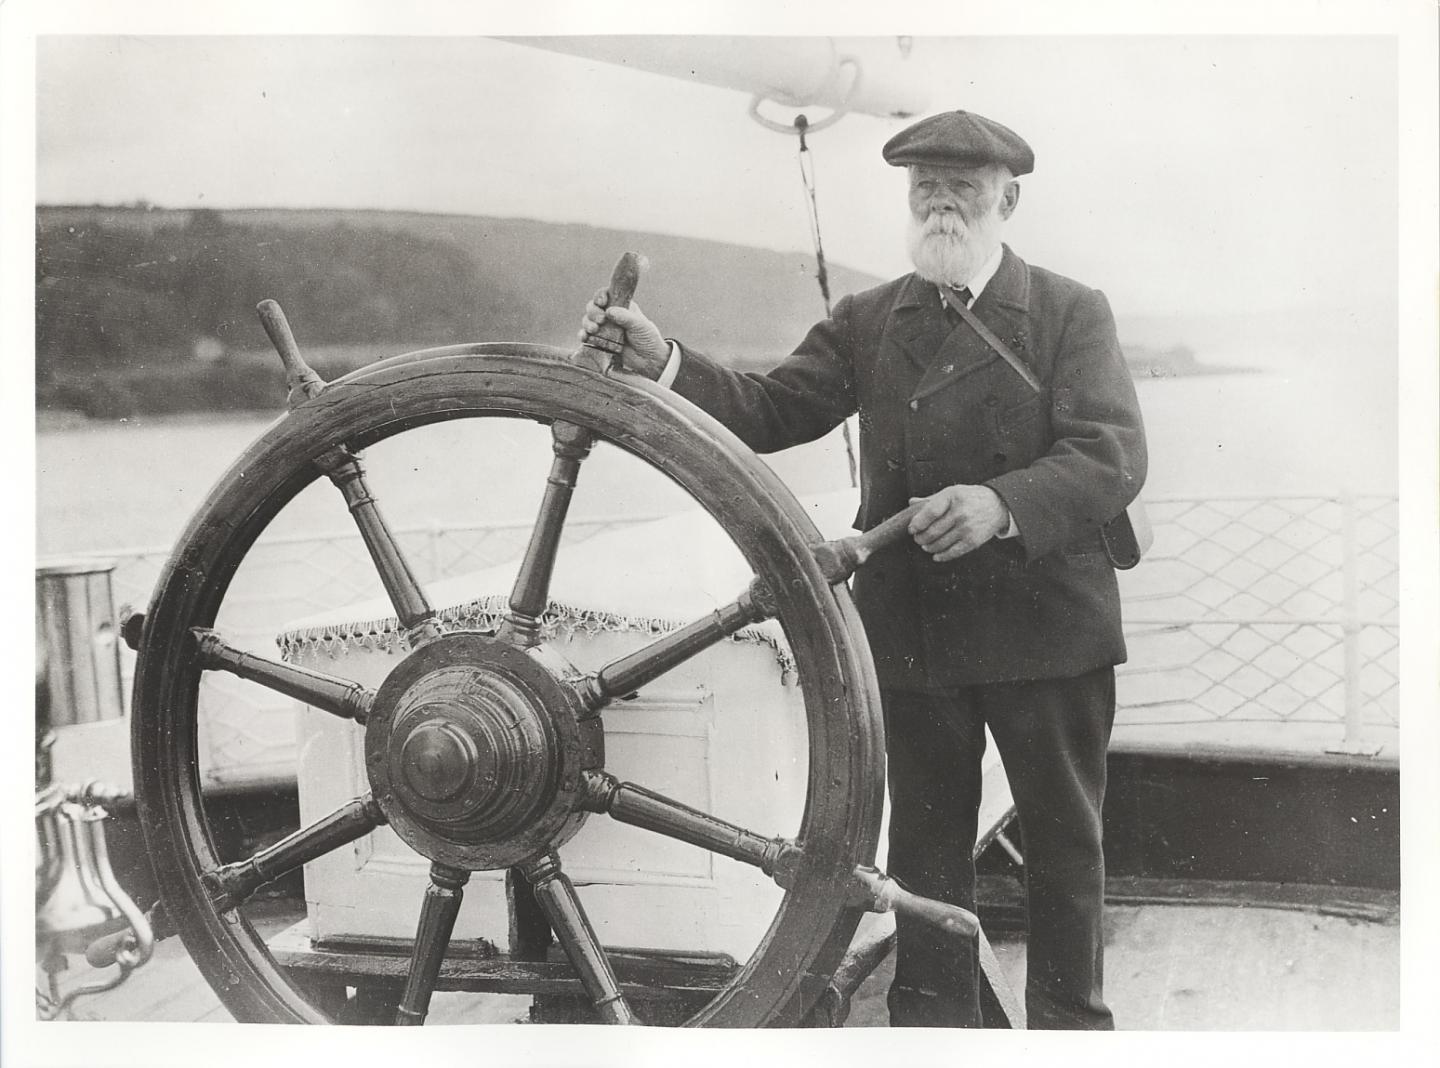 Captain Woodget at ship's wheel, Falmouth c.1924